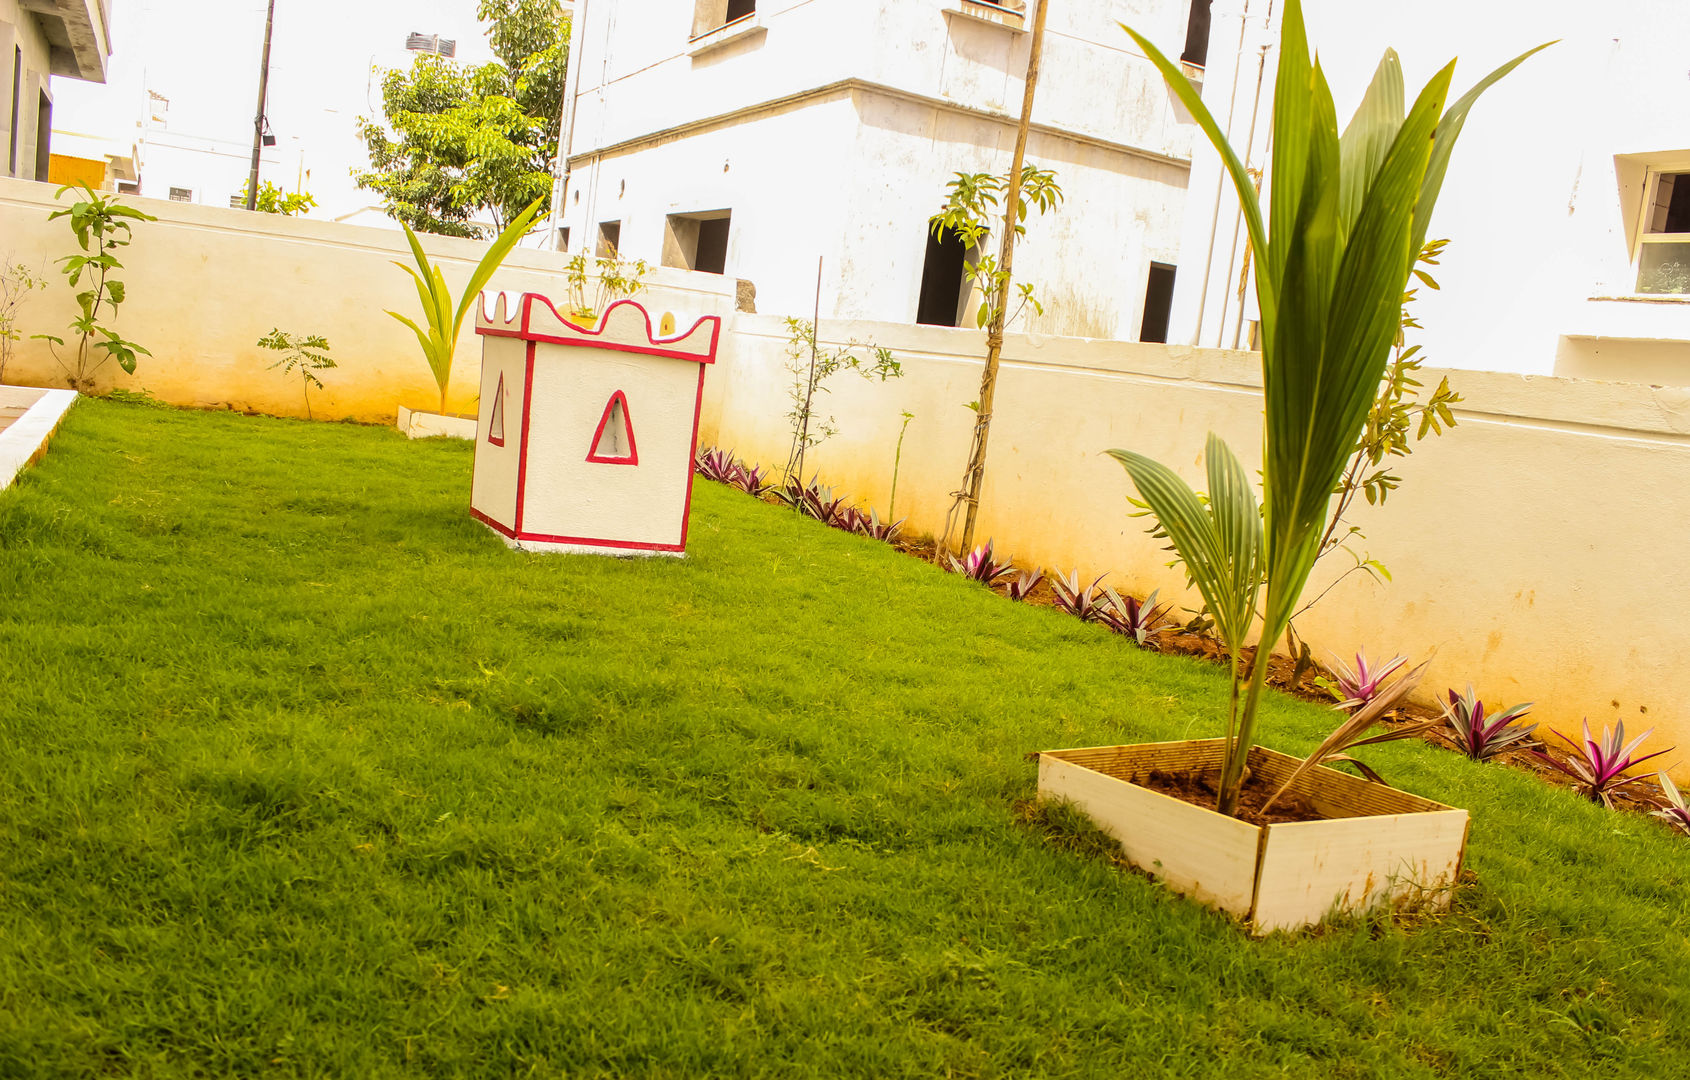 Villa at Appa Junction, Hyderabad., Happy Homes Designers Happy Homes Designers İç bahçe İç Dekorasyon